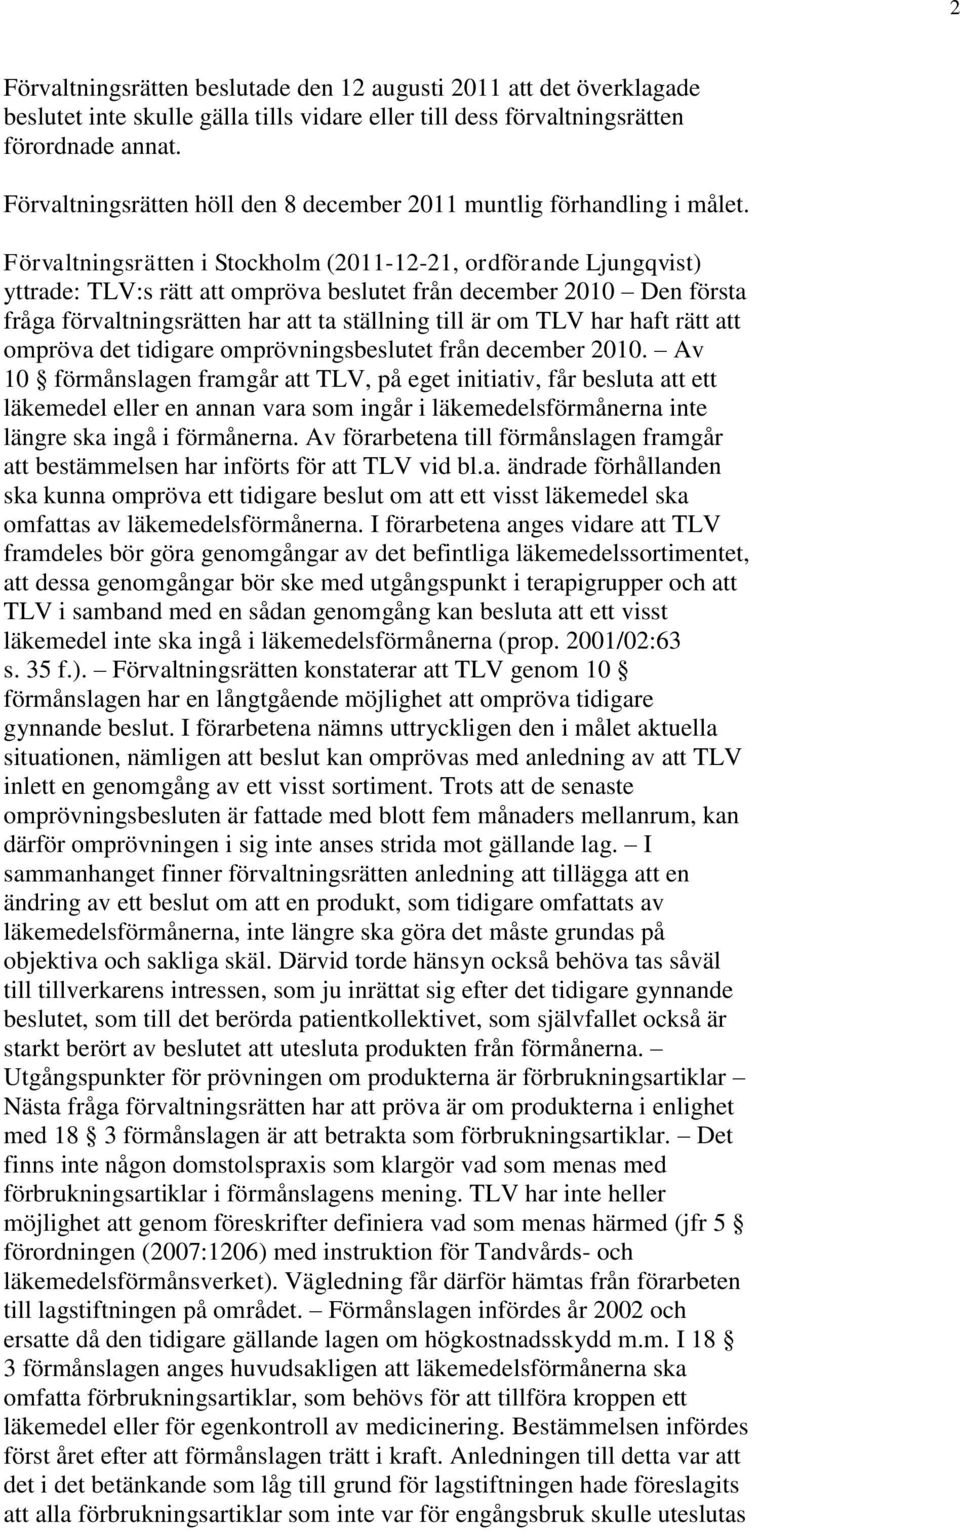 Förvaltningsrätten i Stockholm (2011-12-21, ordförande Ljungqvist) yttrade: TLV:s rätt att ompröva beslutet från december 2010 Den första fråga förvaltningsrätten har att ta ställning till är om TLV